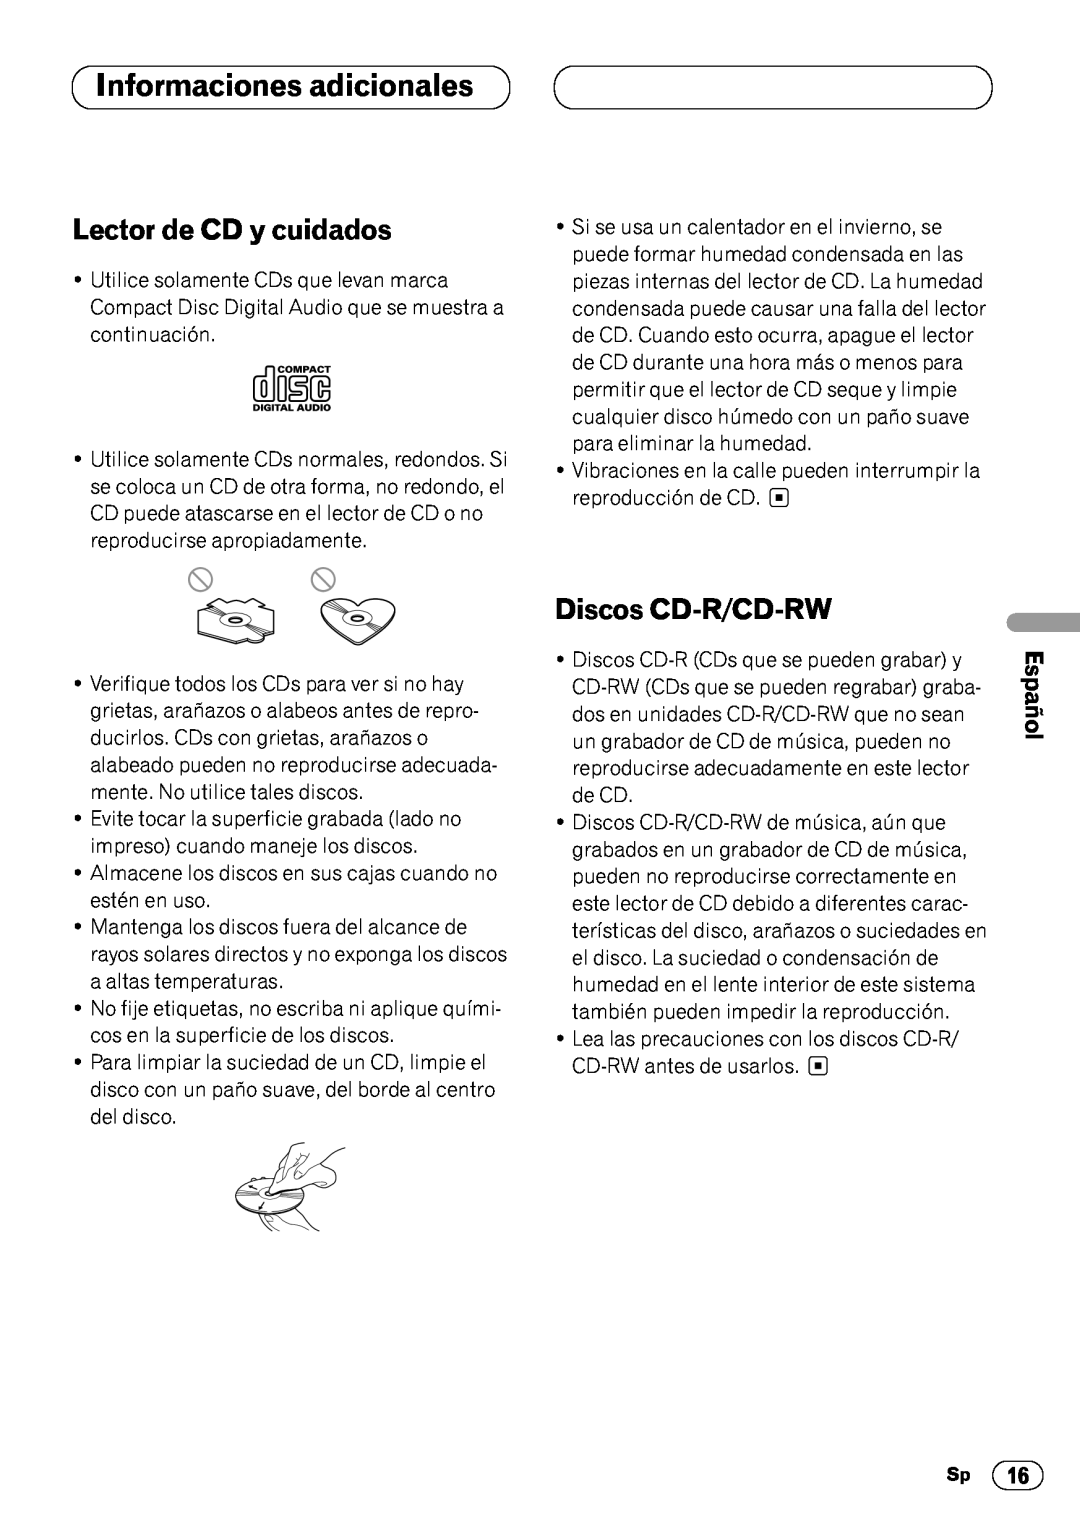 Pioneer DEH-3400 Informaciones adicionales, Lector de CD y cuidados, Discos CD-R/CD-RW, English Français, Español 